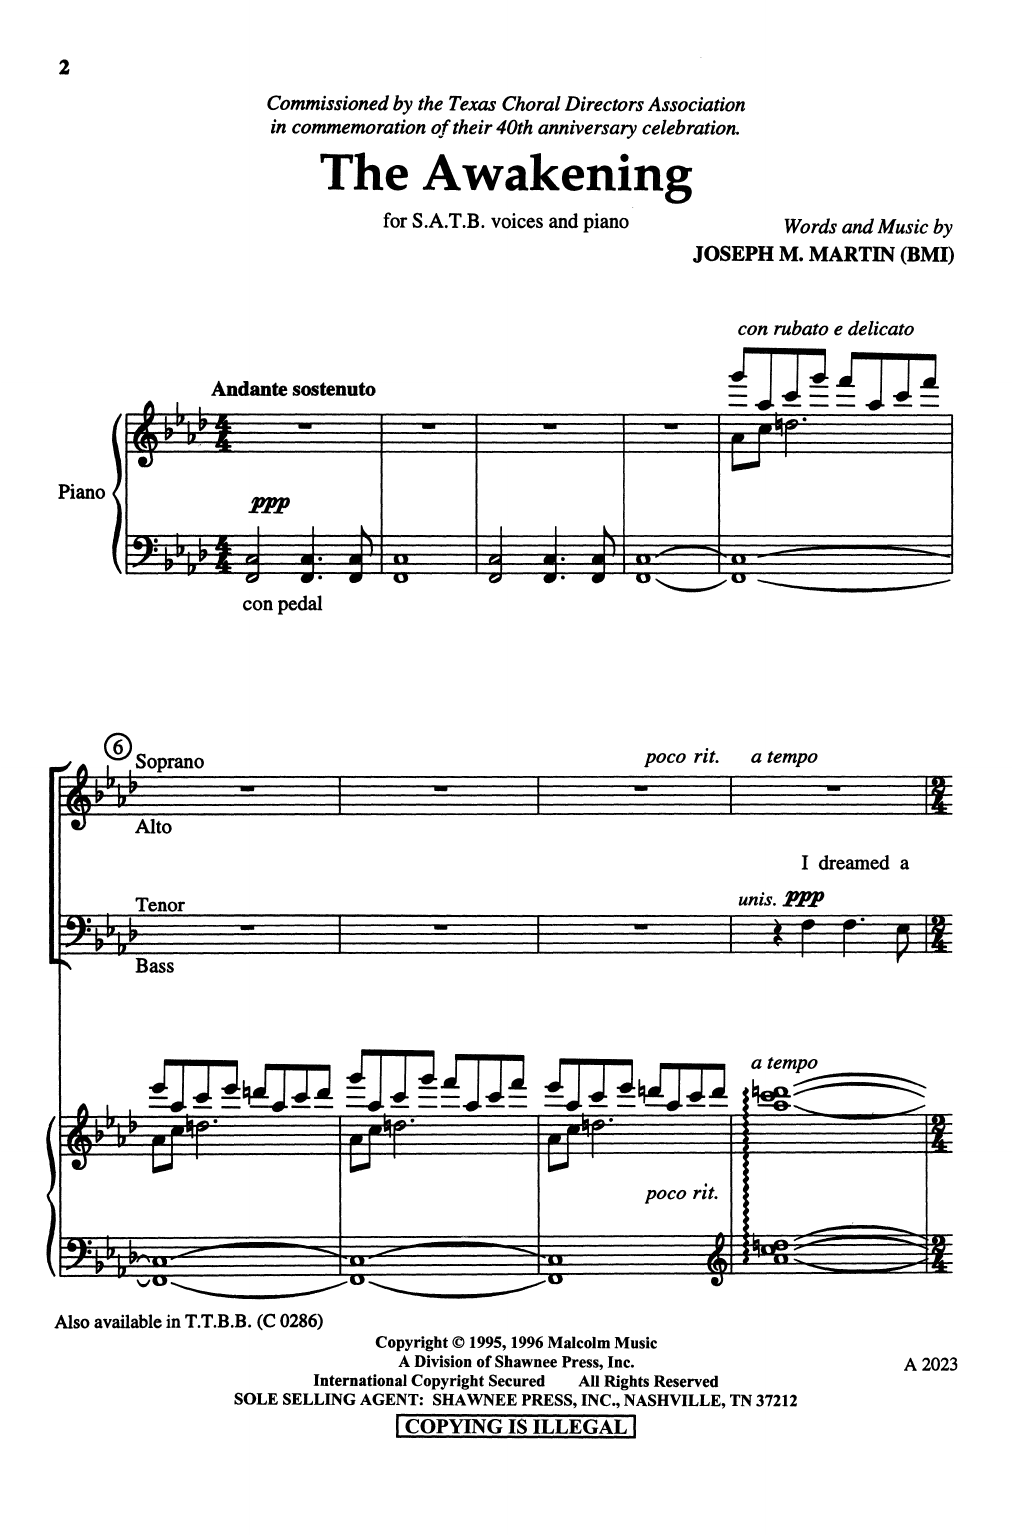 Joseph M. Martin The Awakening Sheet Music Notes & Chords for SATB Choir - Download or Print PDF